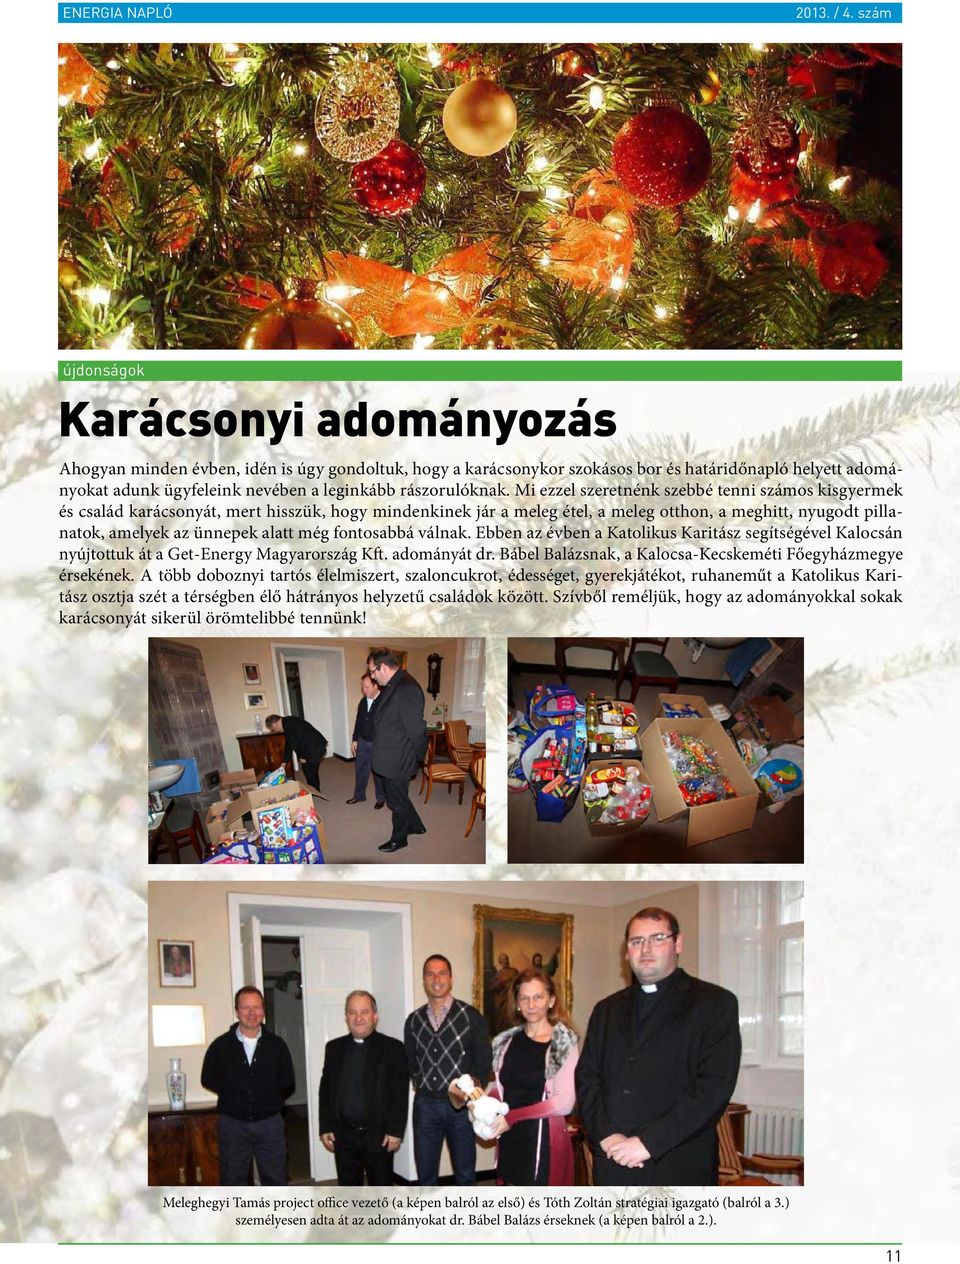 fontosabbá válnak. Ebben az évben a Katolikus Karitász segítségével Kalocsán nyújtottuk át a Get-Energy Magyarország Kft. adományát dr. Bábel Balázsnak, a Kalocsa-Kecskeméti Főegyházmegye érsekének.